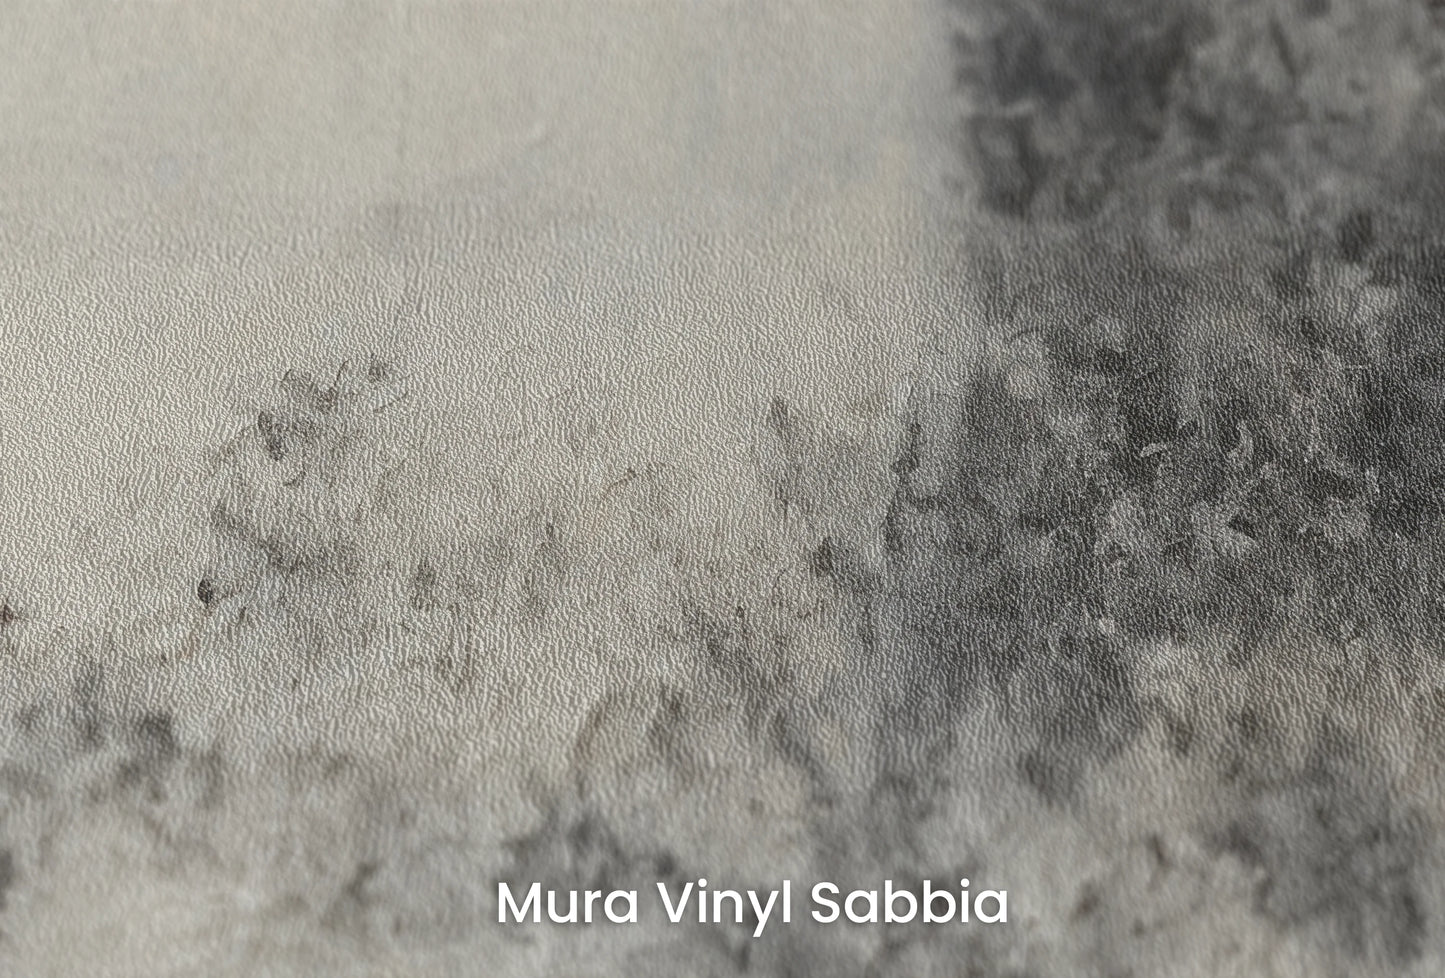 Zbliżenie na artystyczną fototapetę o nazwie Full Moon Calm na podłożu Mura Vinyl Sabbia struktura grubego ziarna piasku.